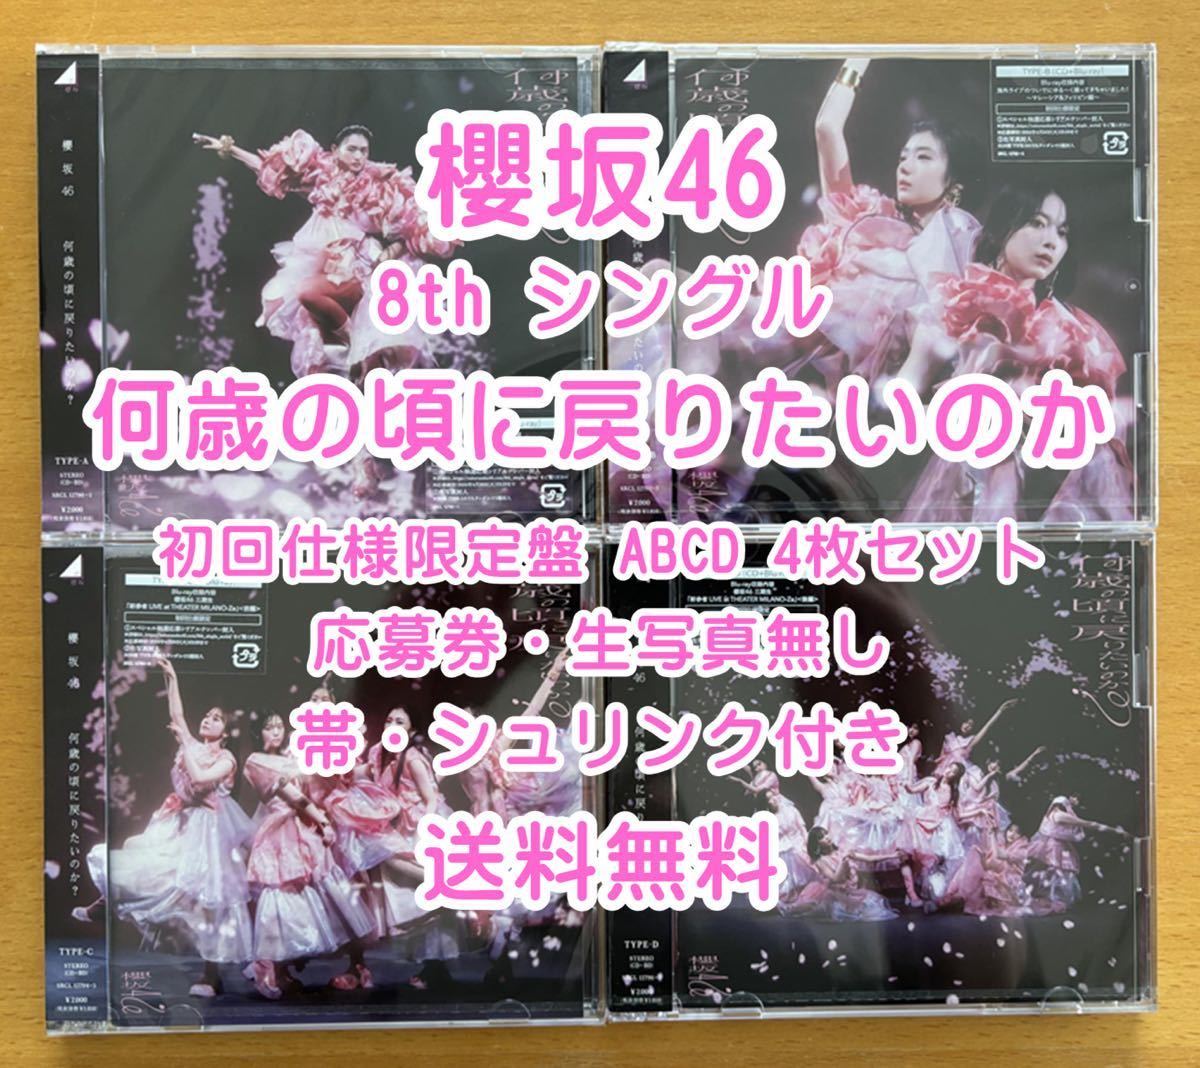 ◆ 櫻坂46 8th 何歳の頃に戻りたいのか 初回限定仕様 CD+Blu-ray ABCD 4枚セット 未再生 特典関係無し ◆ おすすめの画像1